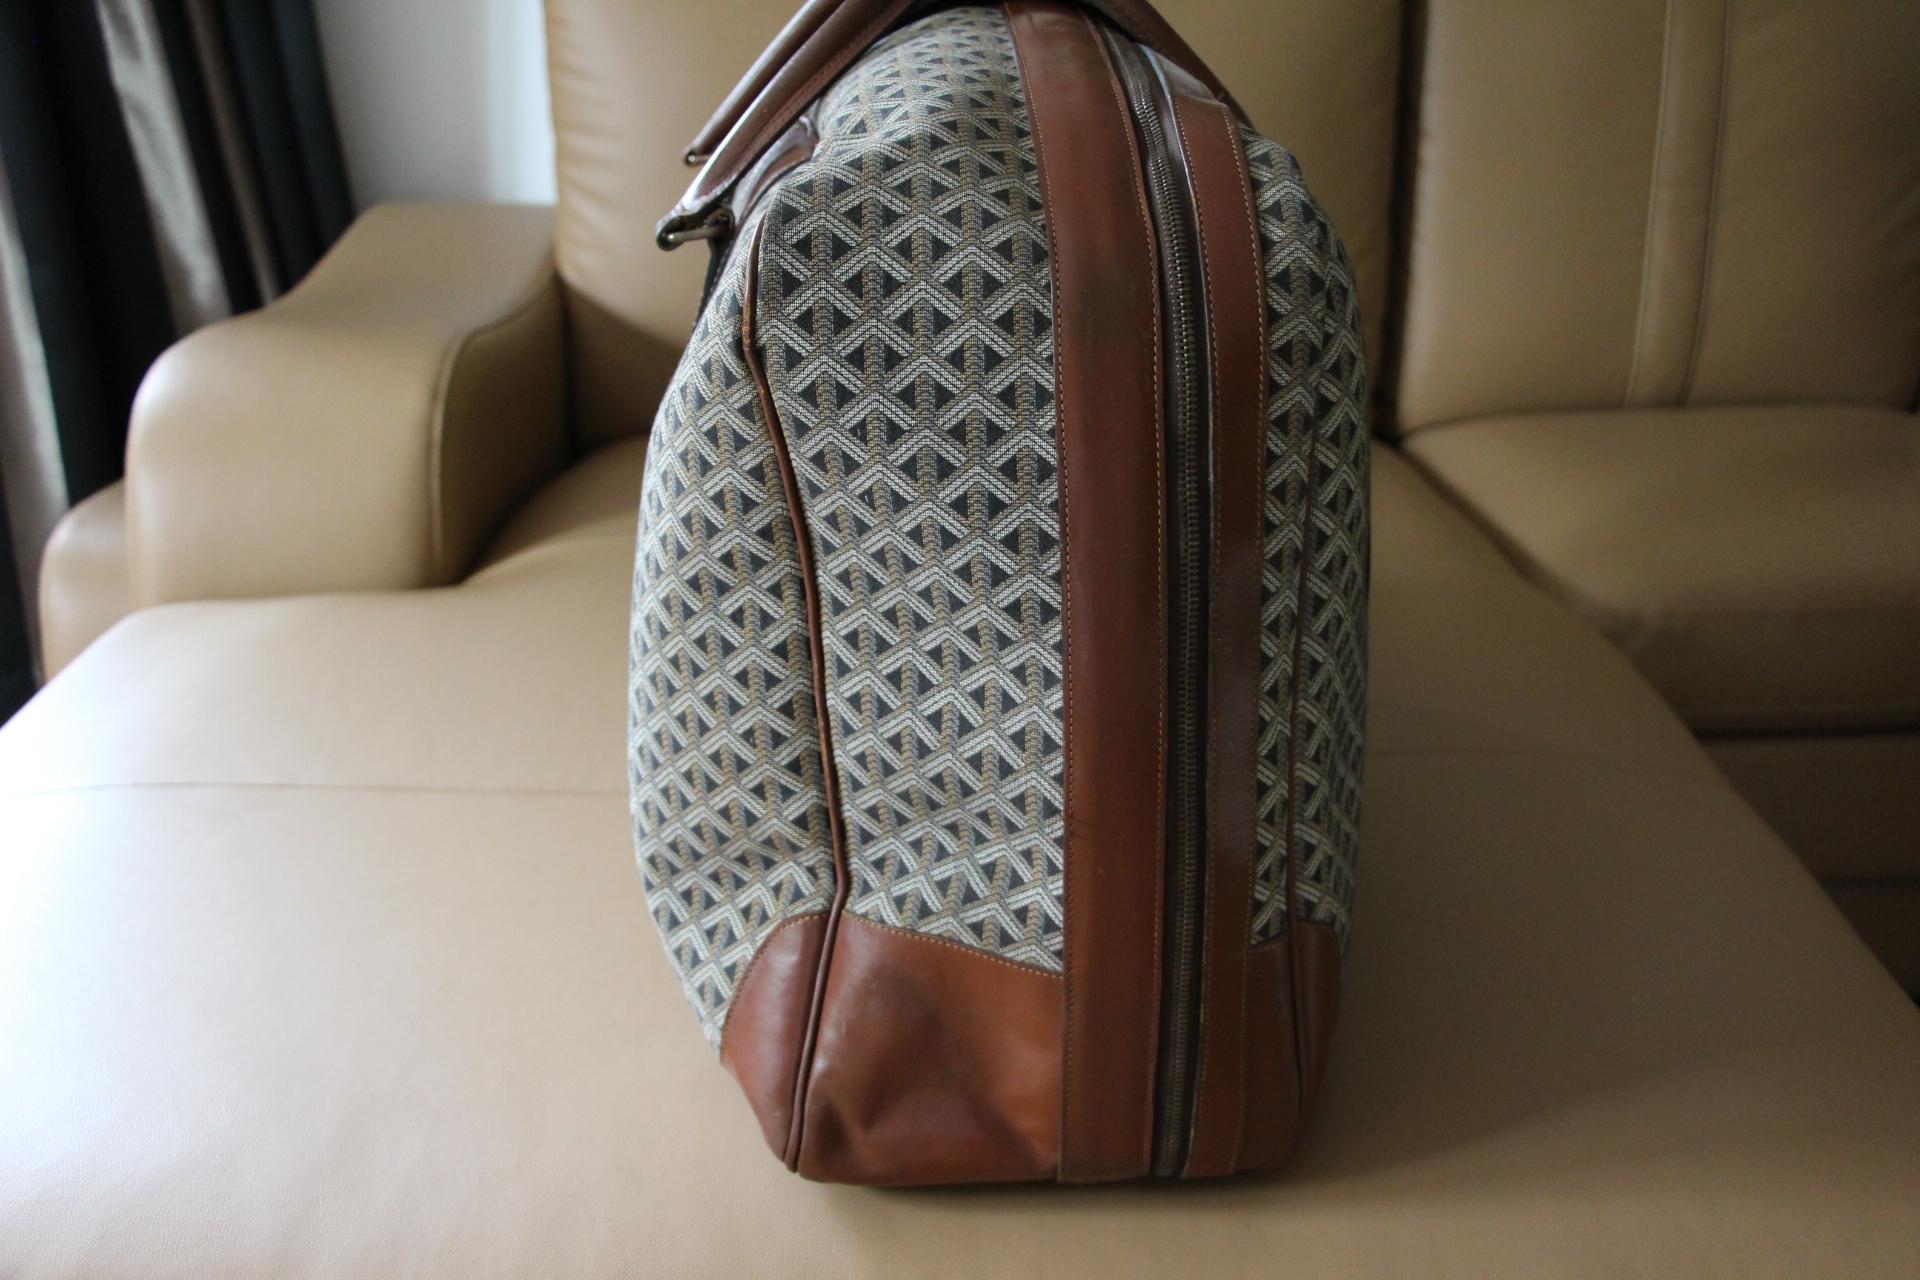 Goyard Suitcase in Woven Canvas, Goyard Steamer Trunk, Goyard Travel Bag 1